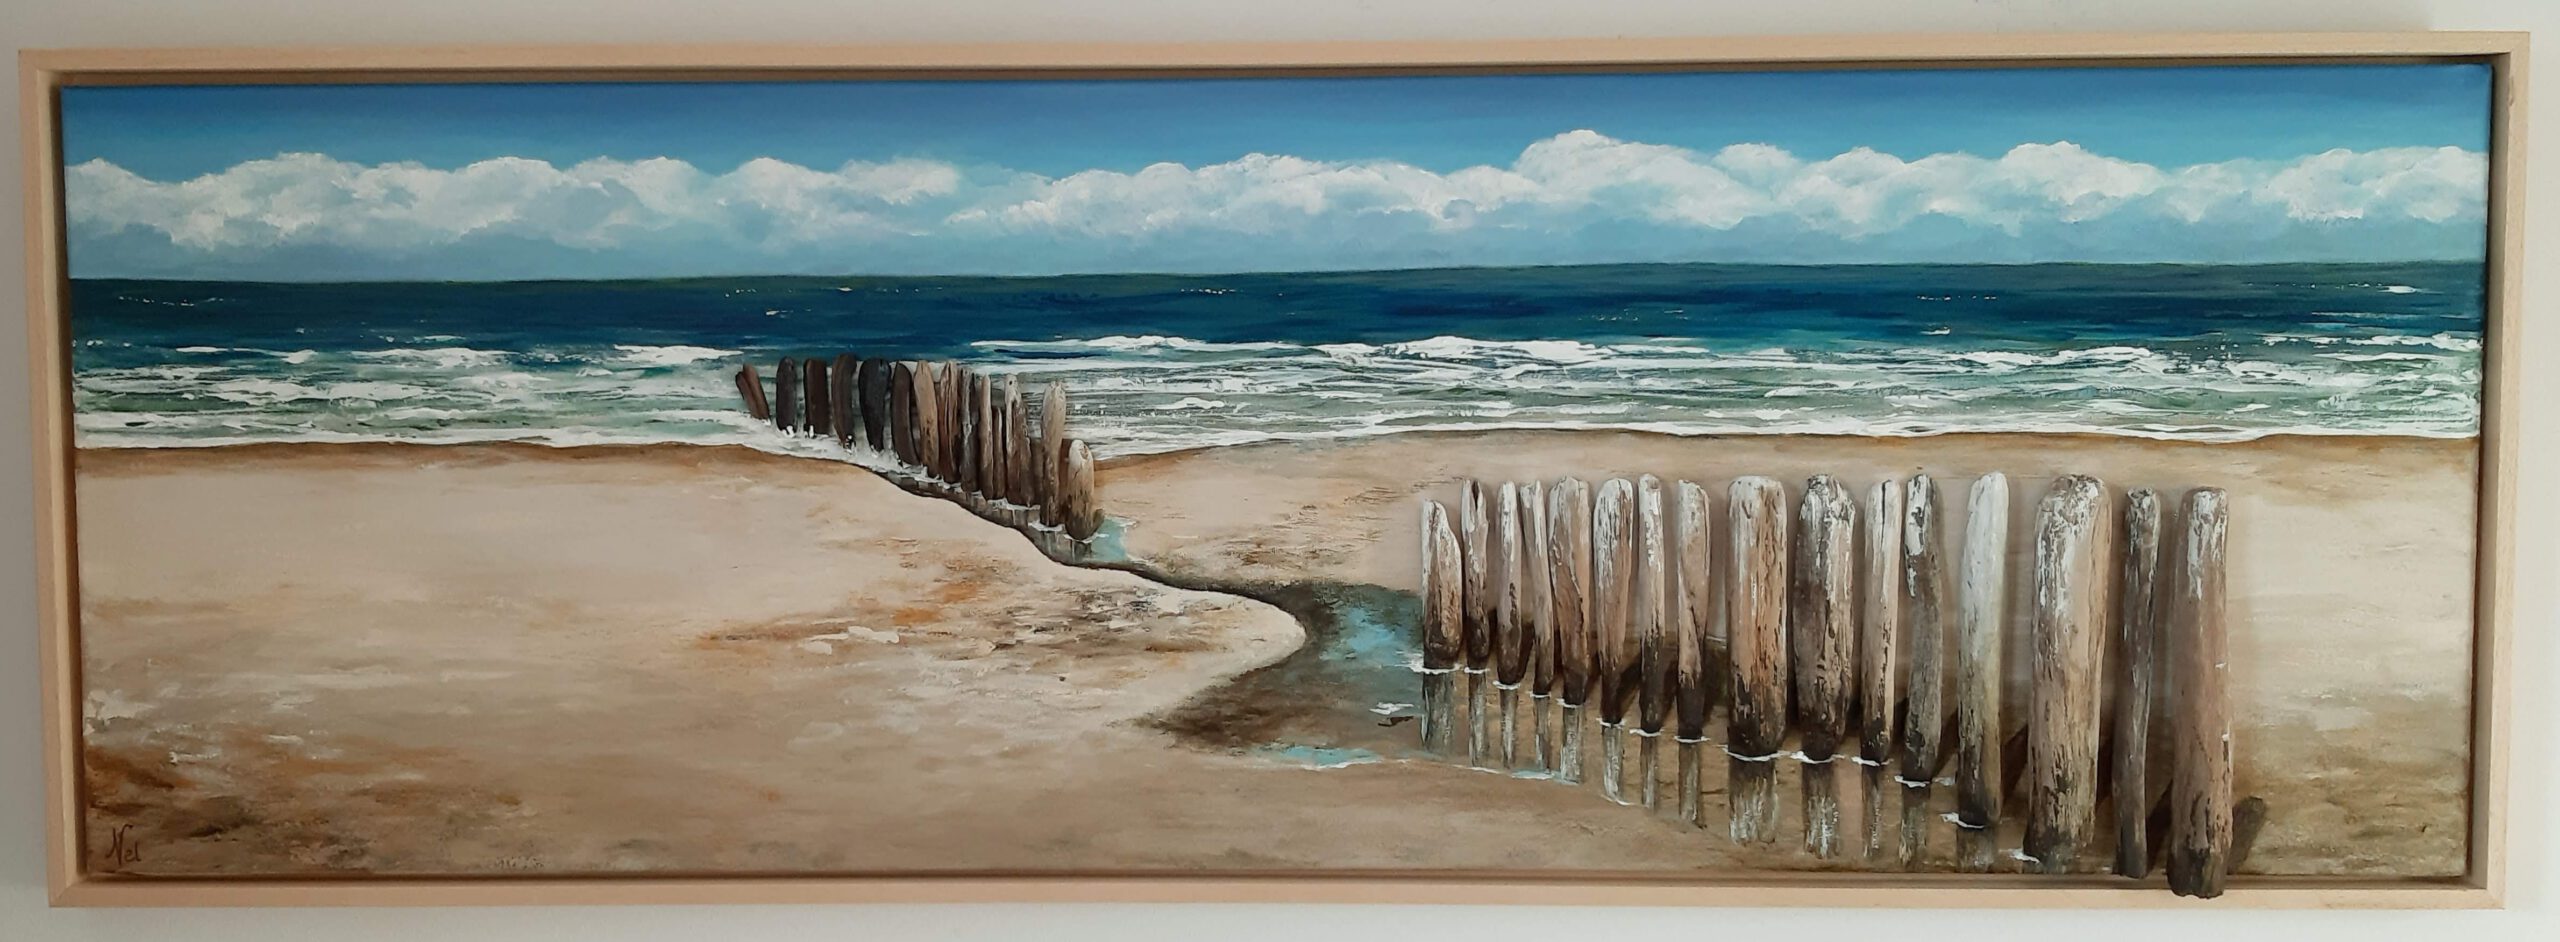 schilderij van een zeegezicht met zee en strandpalen